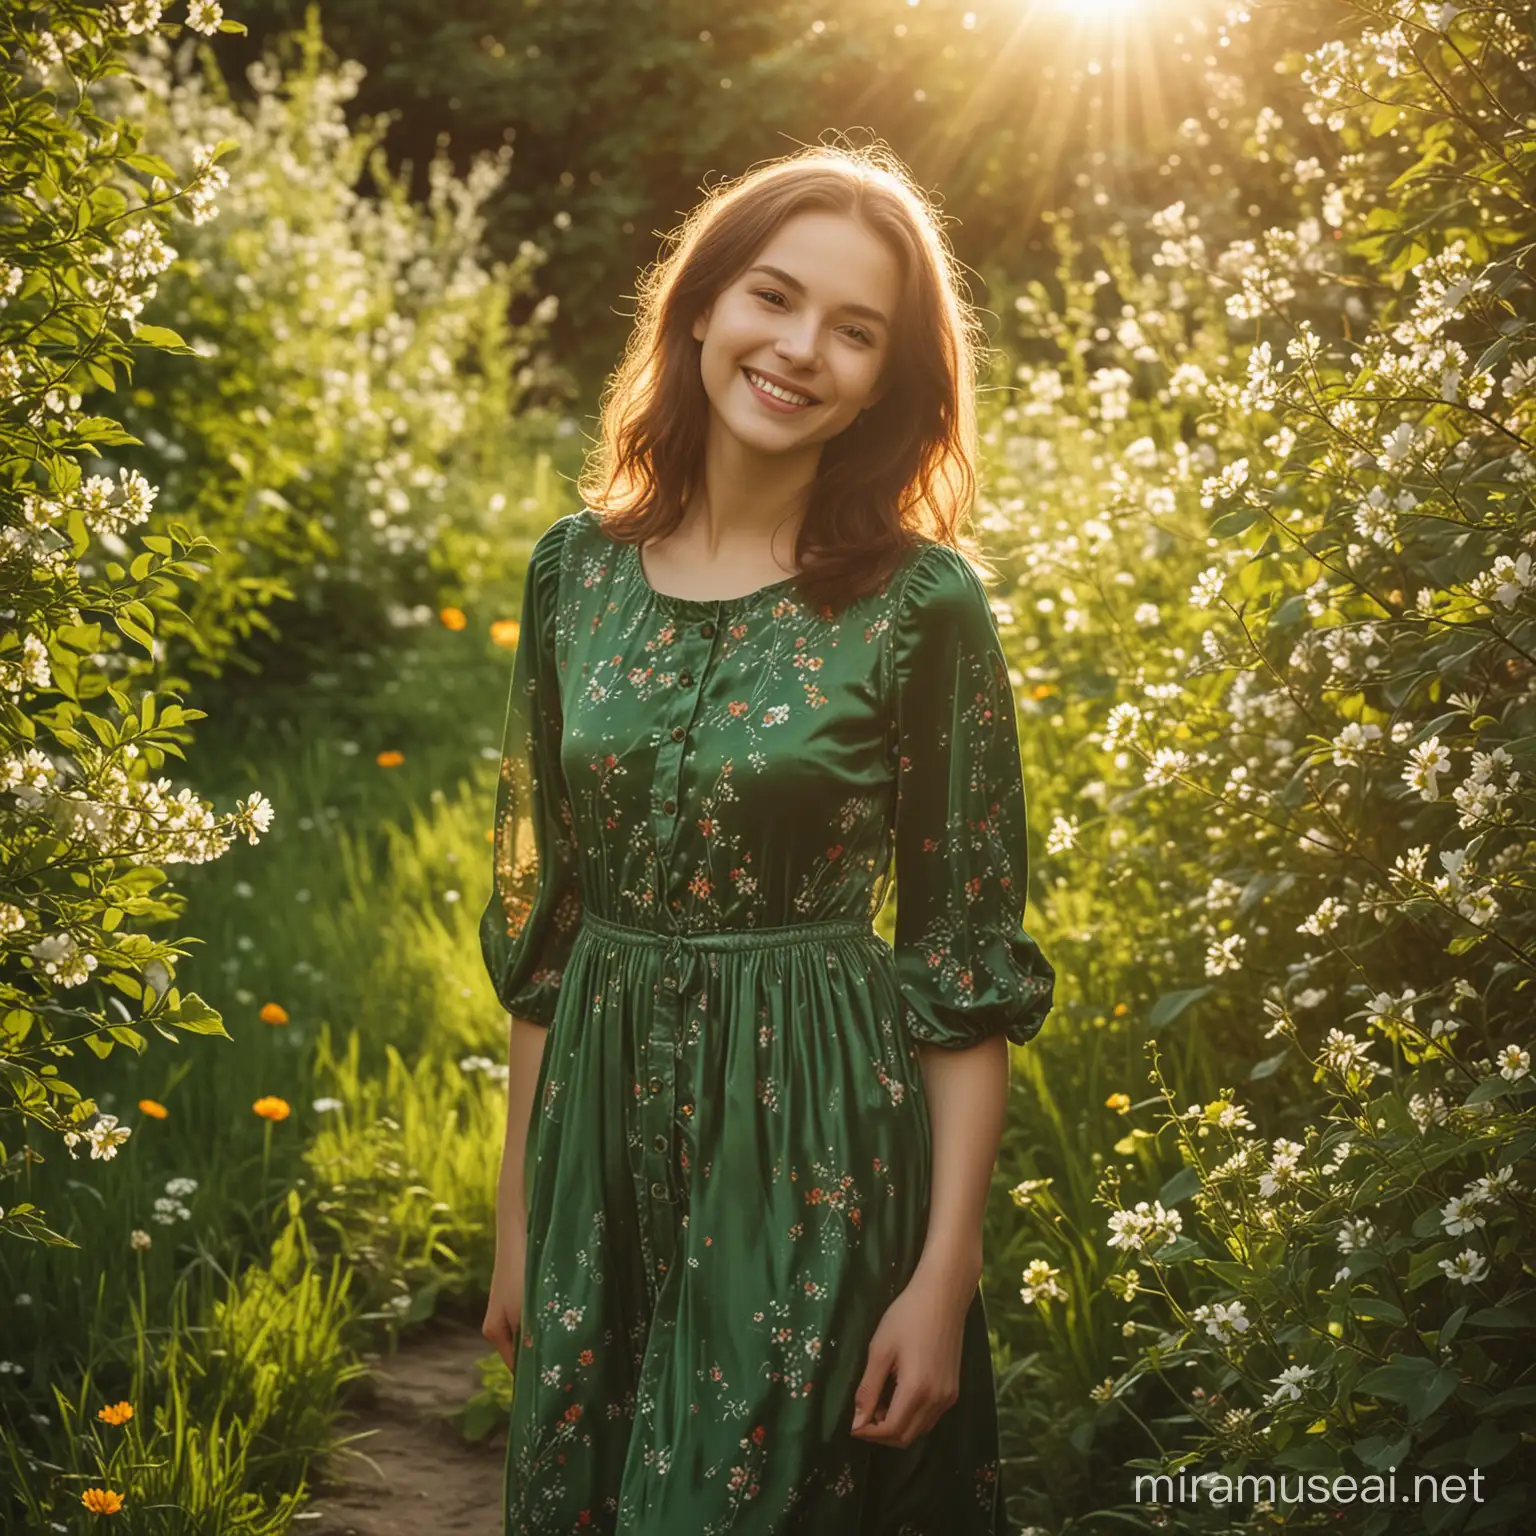 Девушка в зелёном бархатном платье встречает рассвет в весеннем цветущем саду. Вокруг много солнечного света, цветов. Девушка улыбается. 